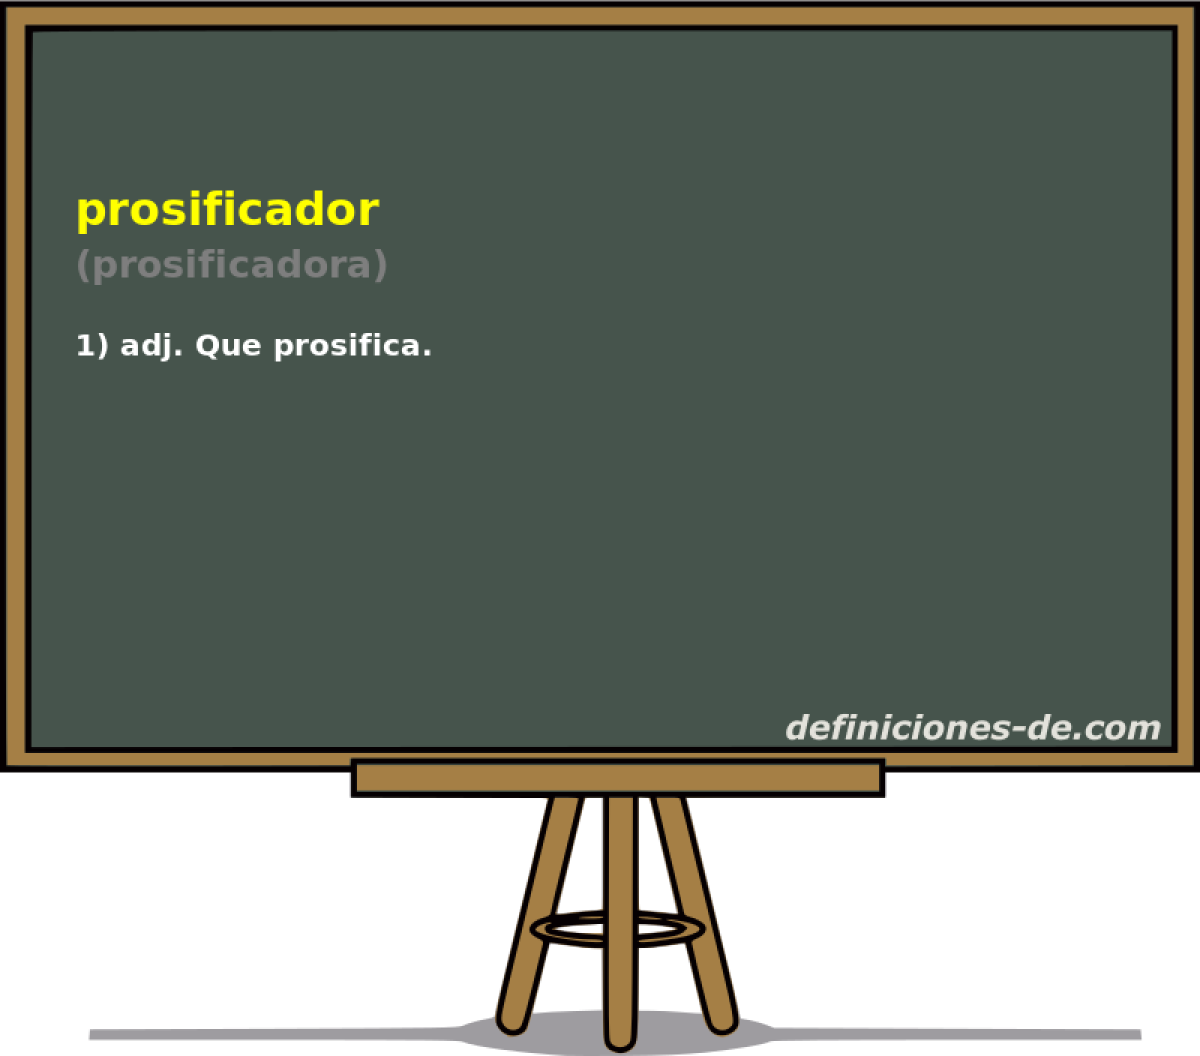 prosificador (prosificadora)